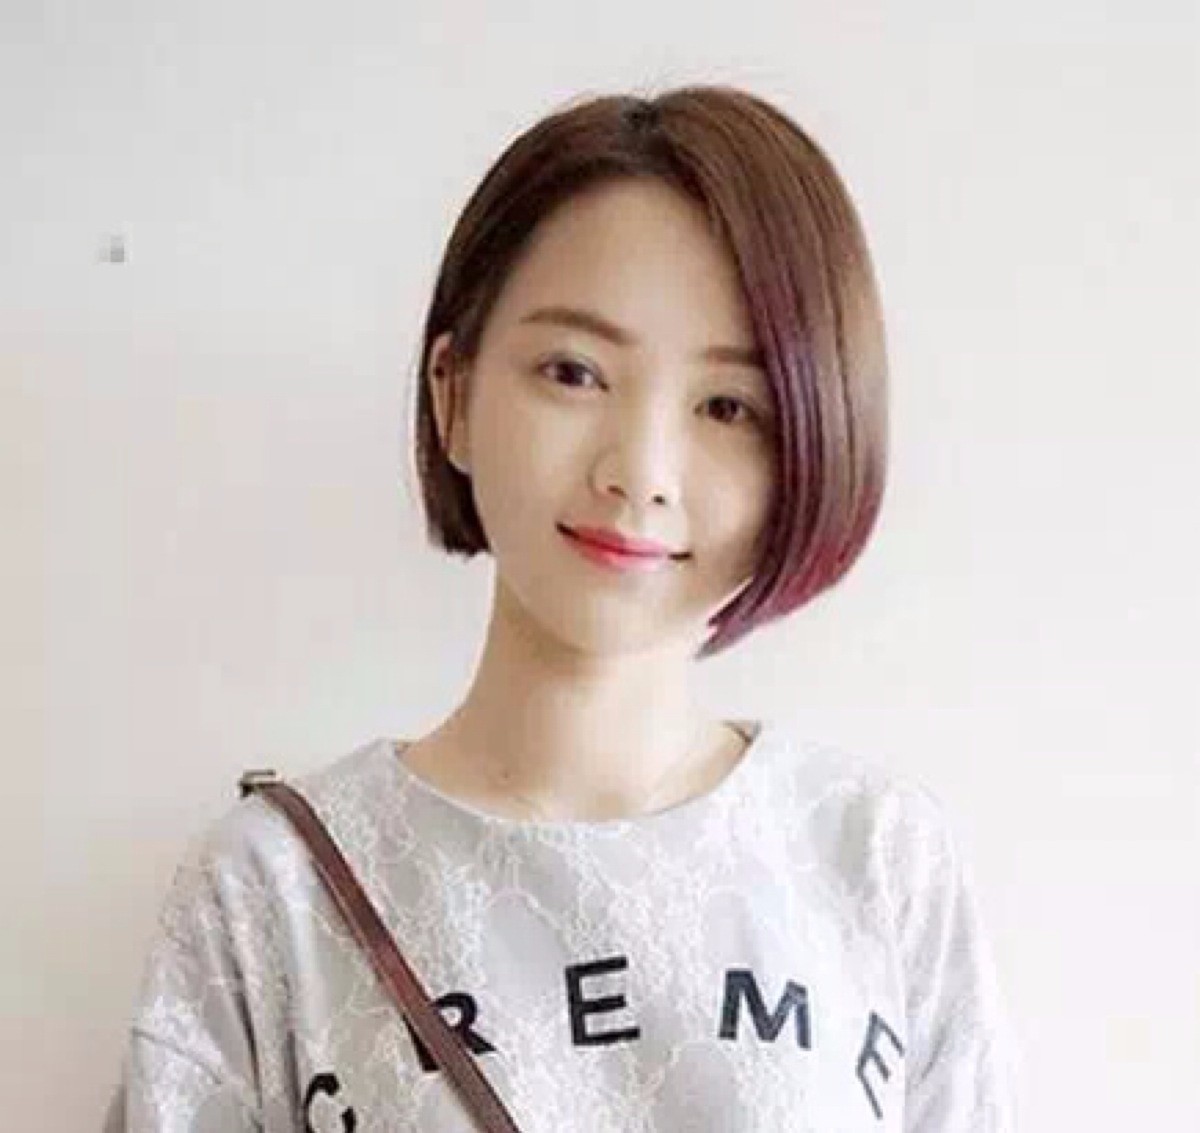 6 韩式短发 空气刘海加栗色发色显白又减龄,娃娃脸萌力翻倍!